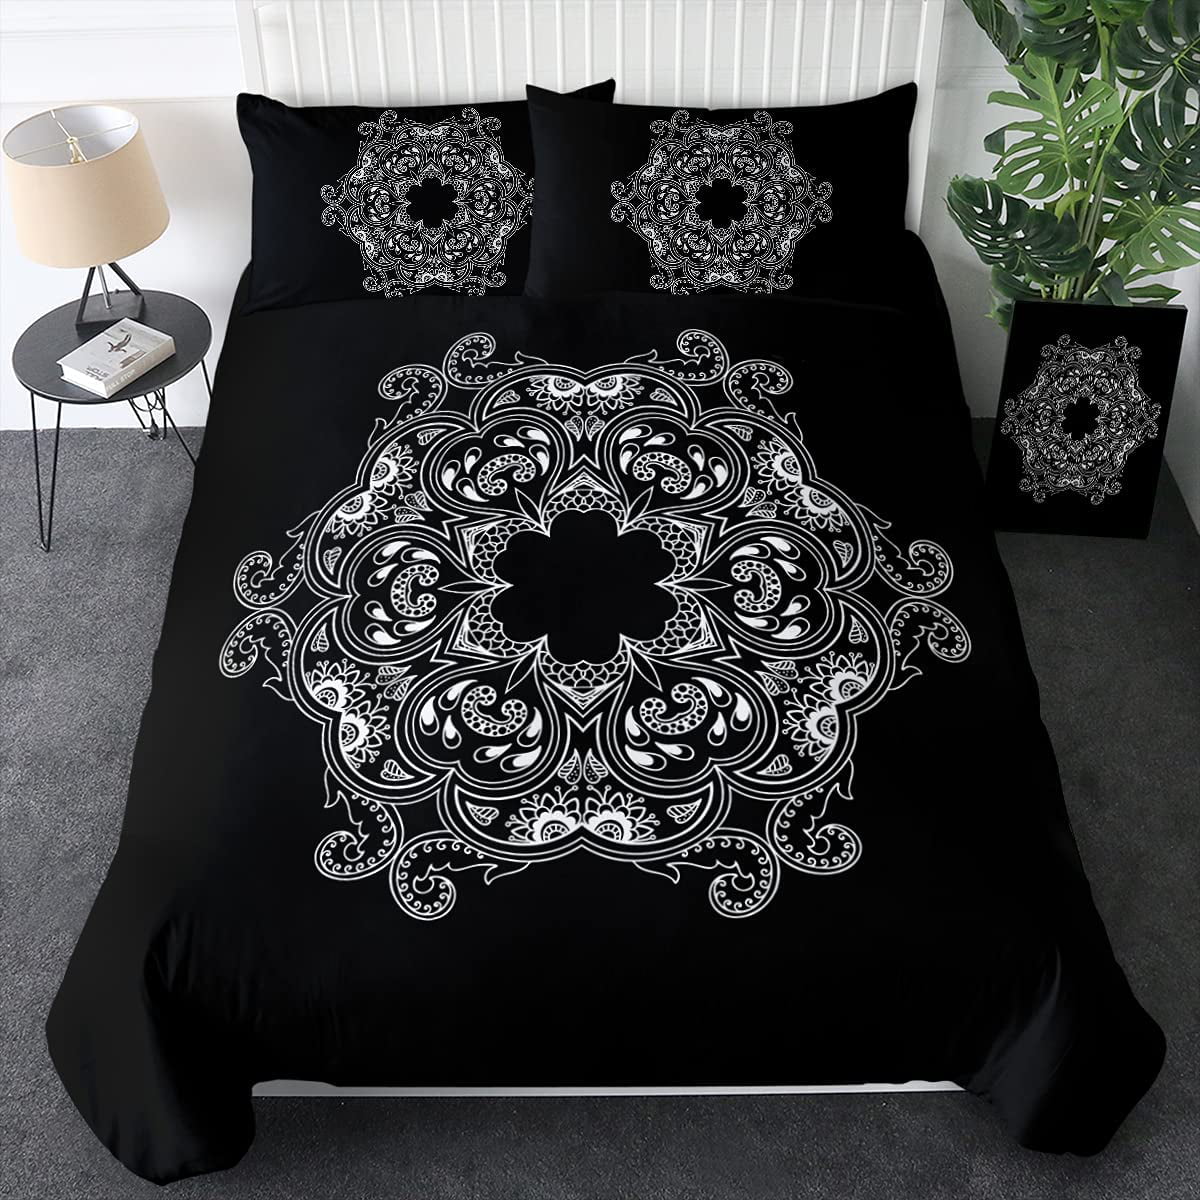 Indian Doona Duvet Cover Queen Mandala Comforter Hippie Dorm Decor Bedding Sheet Boho Bedspread With 2 Pillow Cover